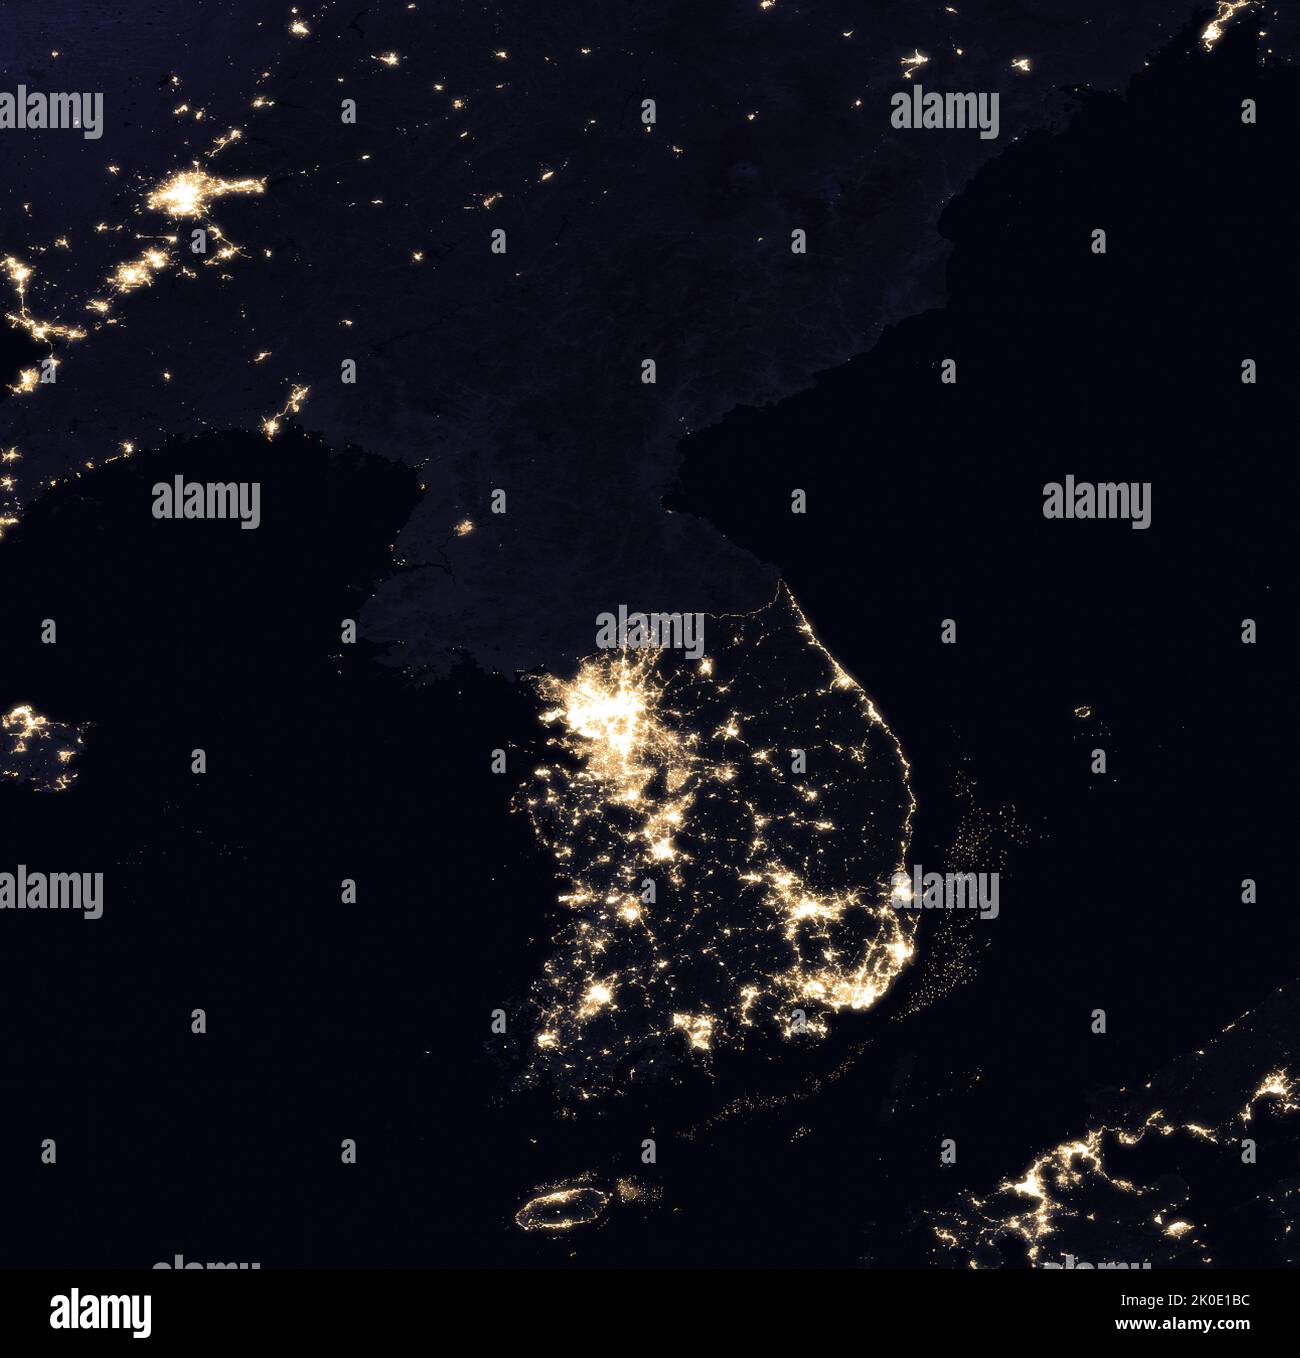 Penisola coreana e zone di confine cinesi di notte. Il forte contrasto è evidente in questa immagine satellitare 2016 dell'abbondanza di luci della città in Corea del Sud e dell'assenza di energia elettrica in Corea del Nord. Foto Stock